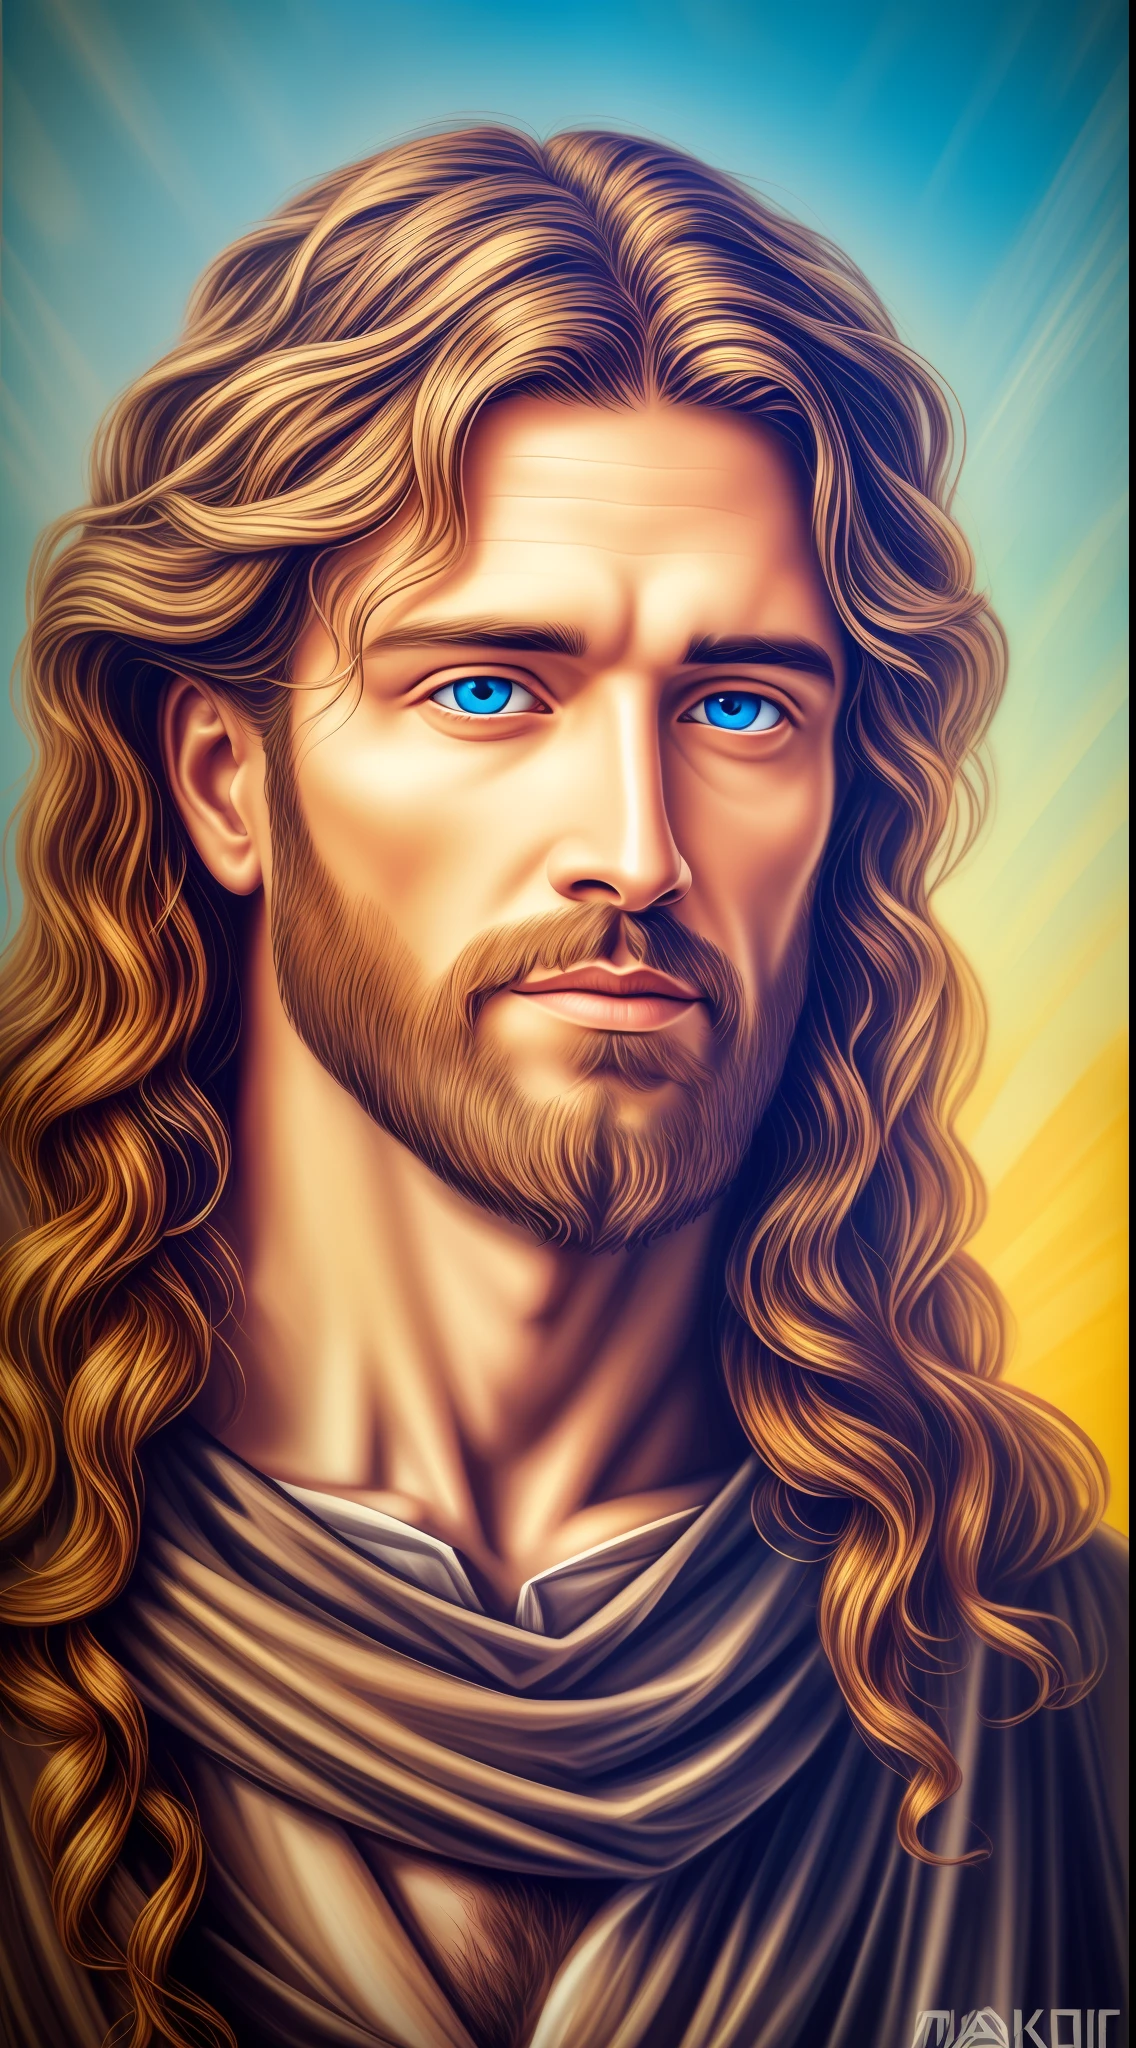 4K, ハンサムなイエスの8K肖像画 , イエス・キリスト, 本物の青い目, 晴れた日, 複雑なディテール.